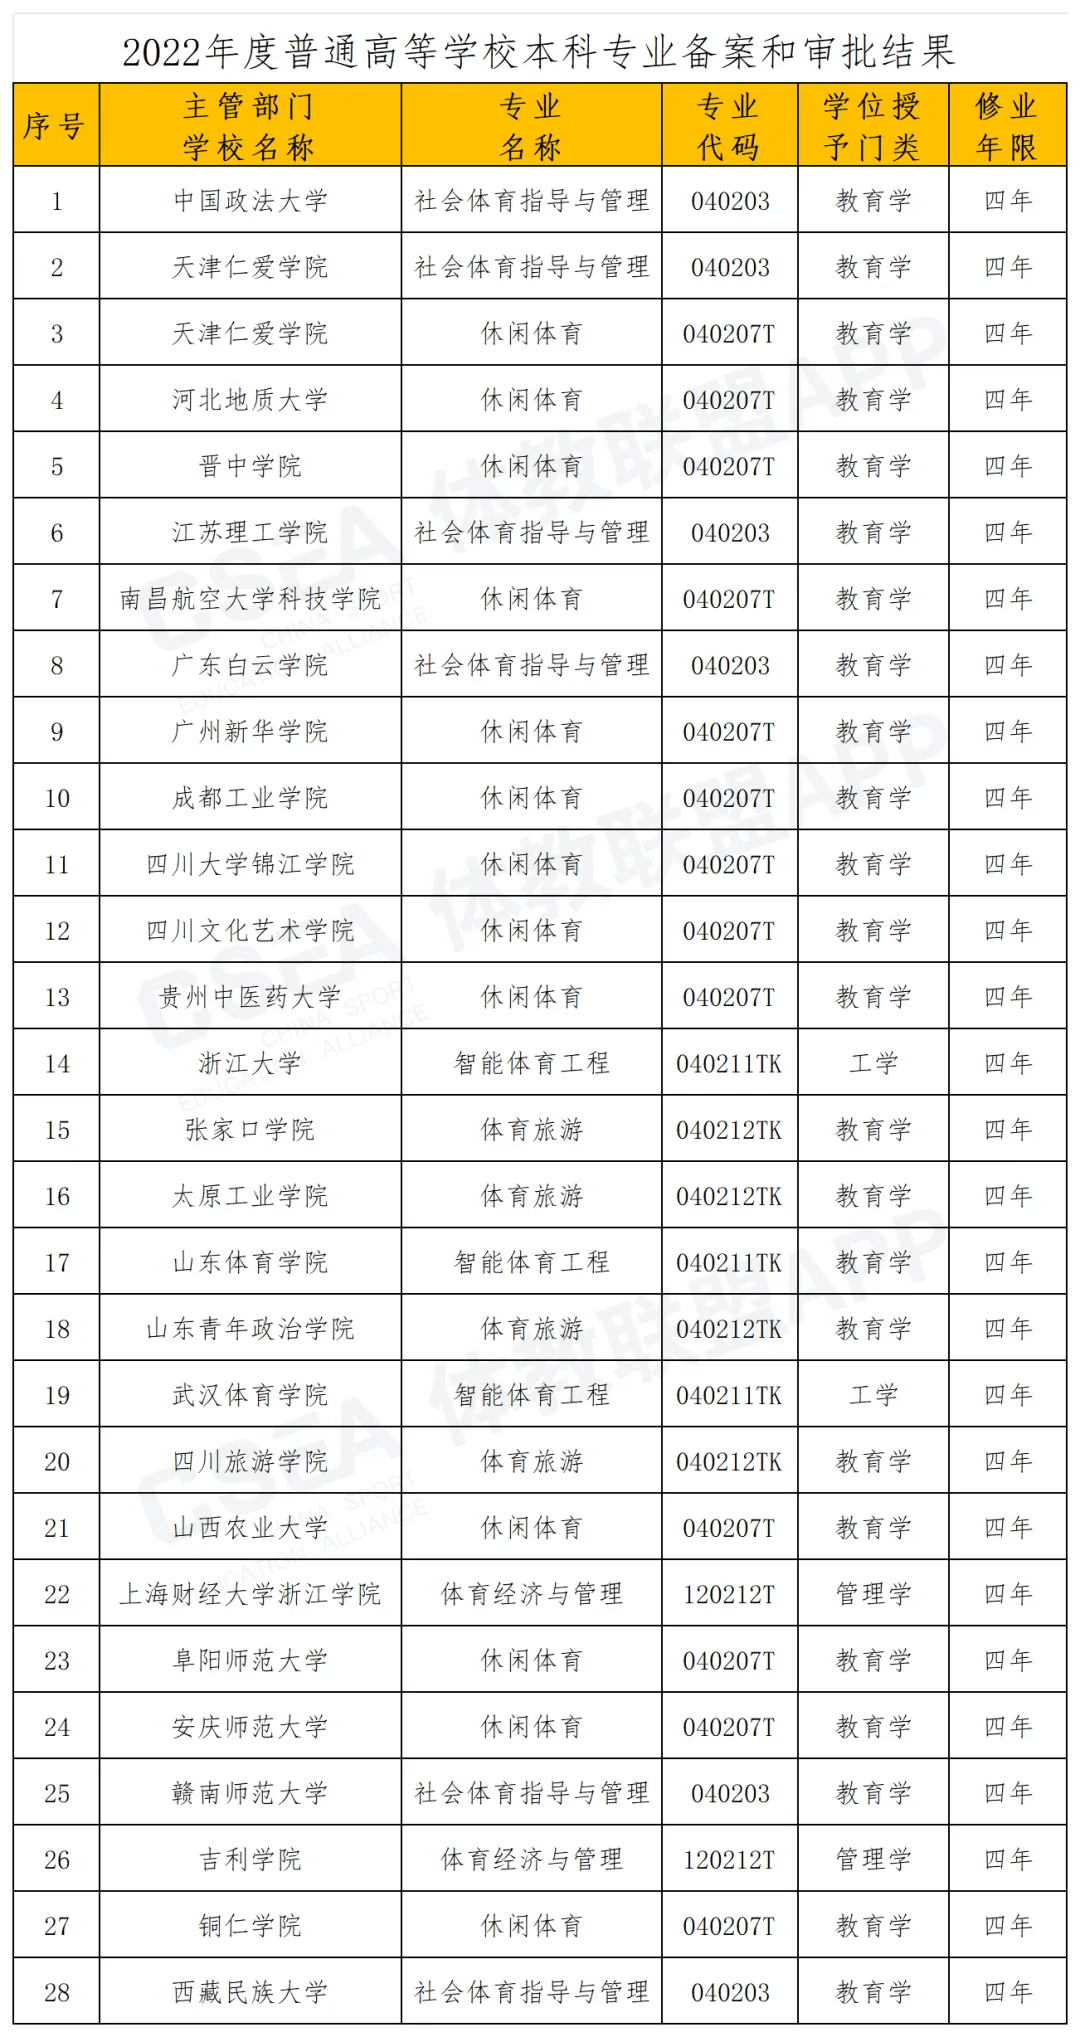 火狐影视：一肖一码100准中奖-成实外教育（01565.HK）6月6日收盘涨1.67%